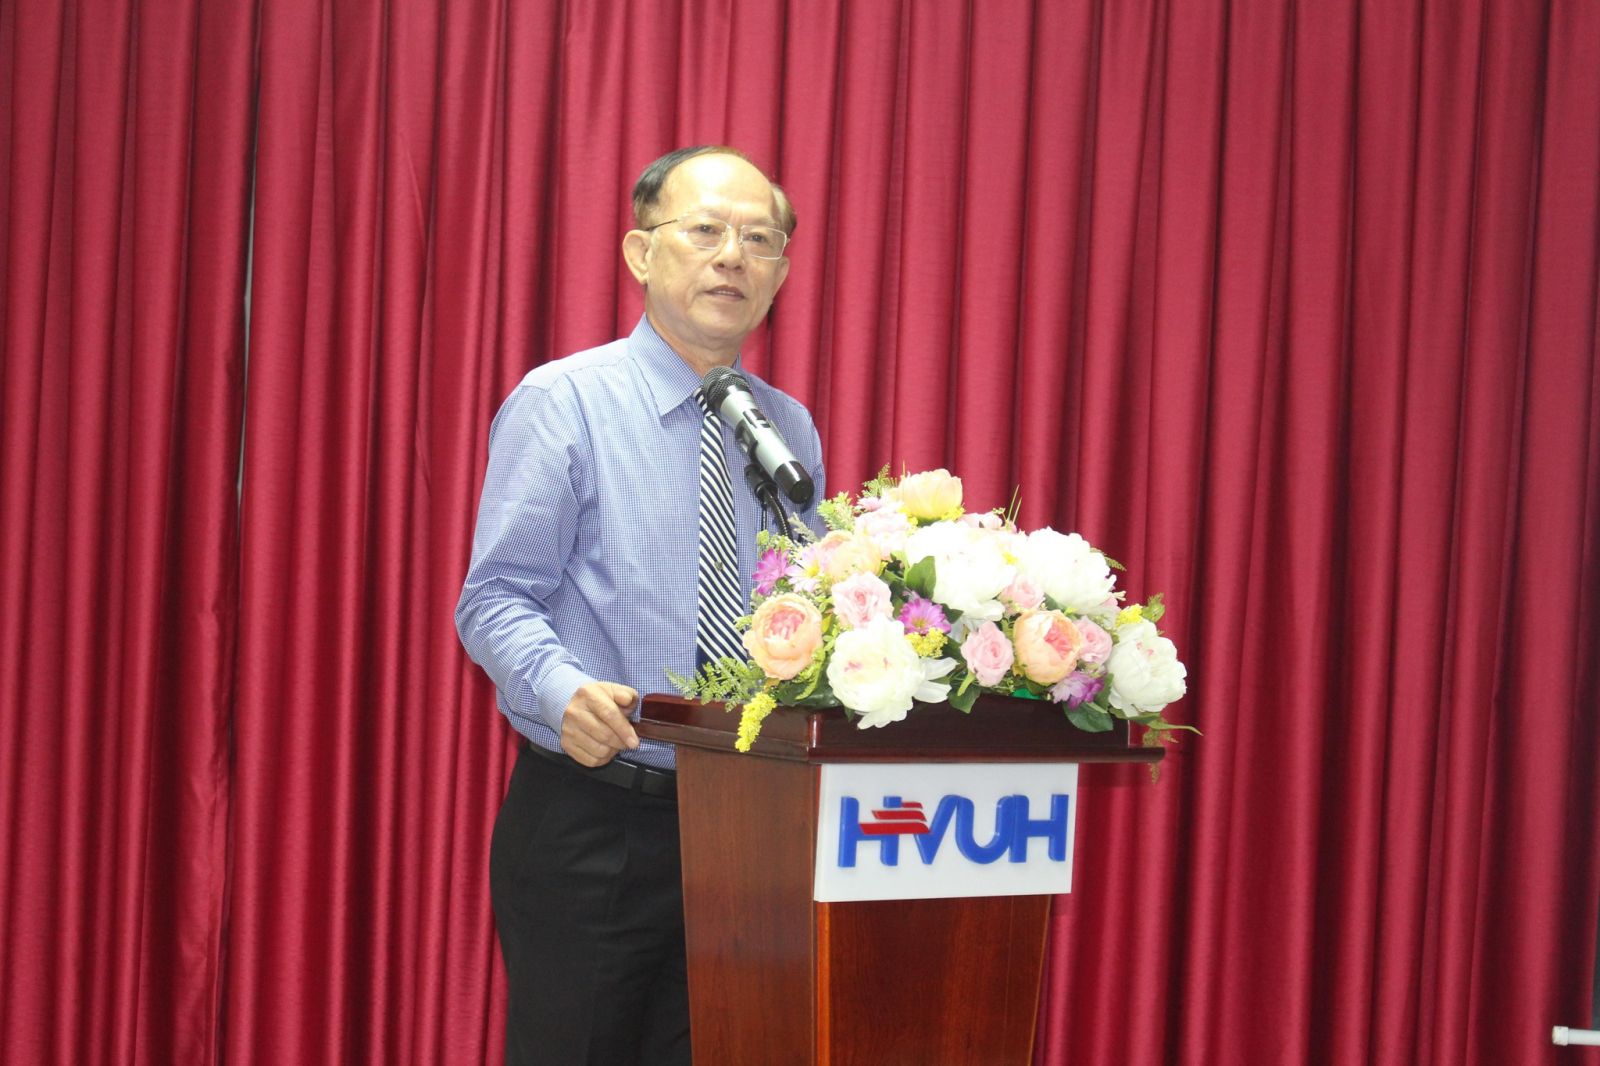 Tiến sĩ Nguyễn Kim Quang trong ngày bổ nhiệm chức vụ hiệu trưởng 24/5/2021